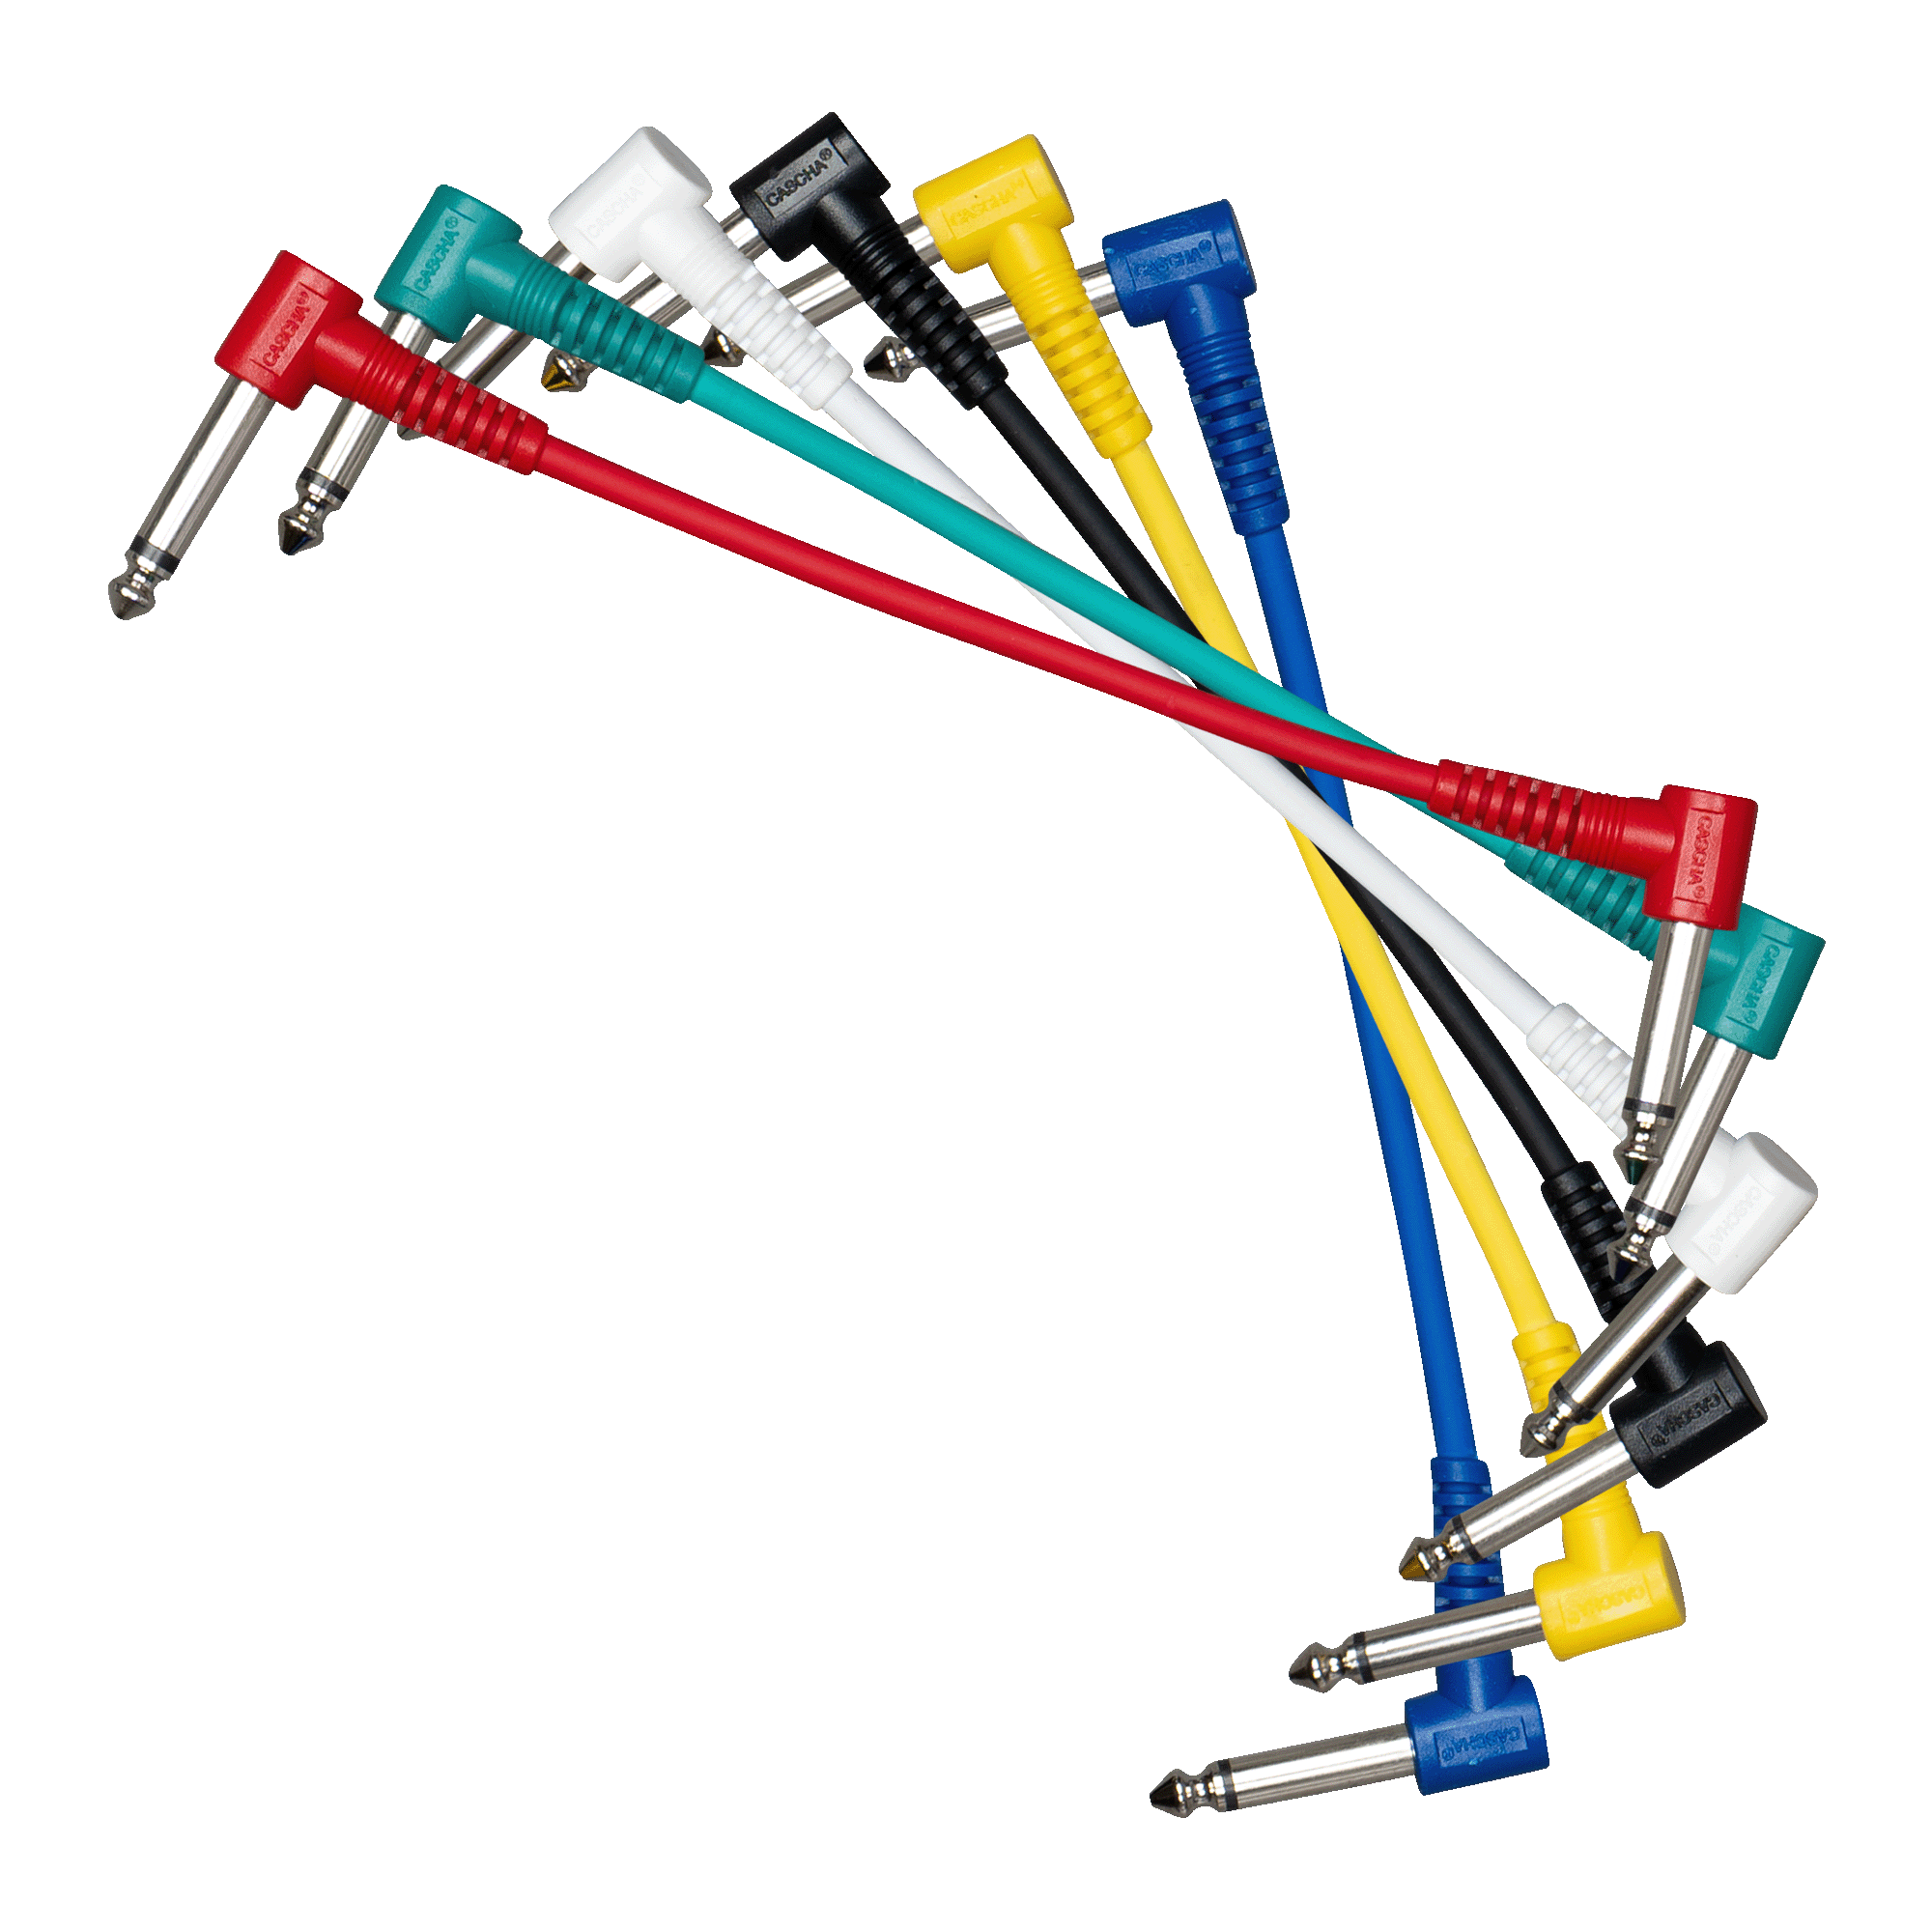 Patch Cable Set, 6 Pieces, Mixed Colours, Length 15 cm